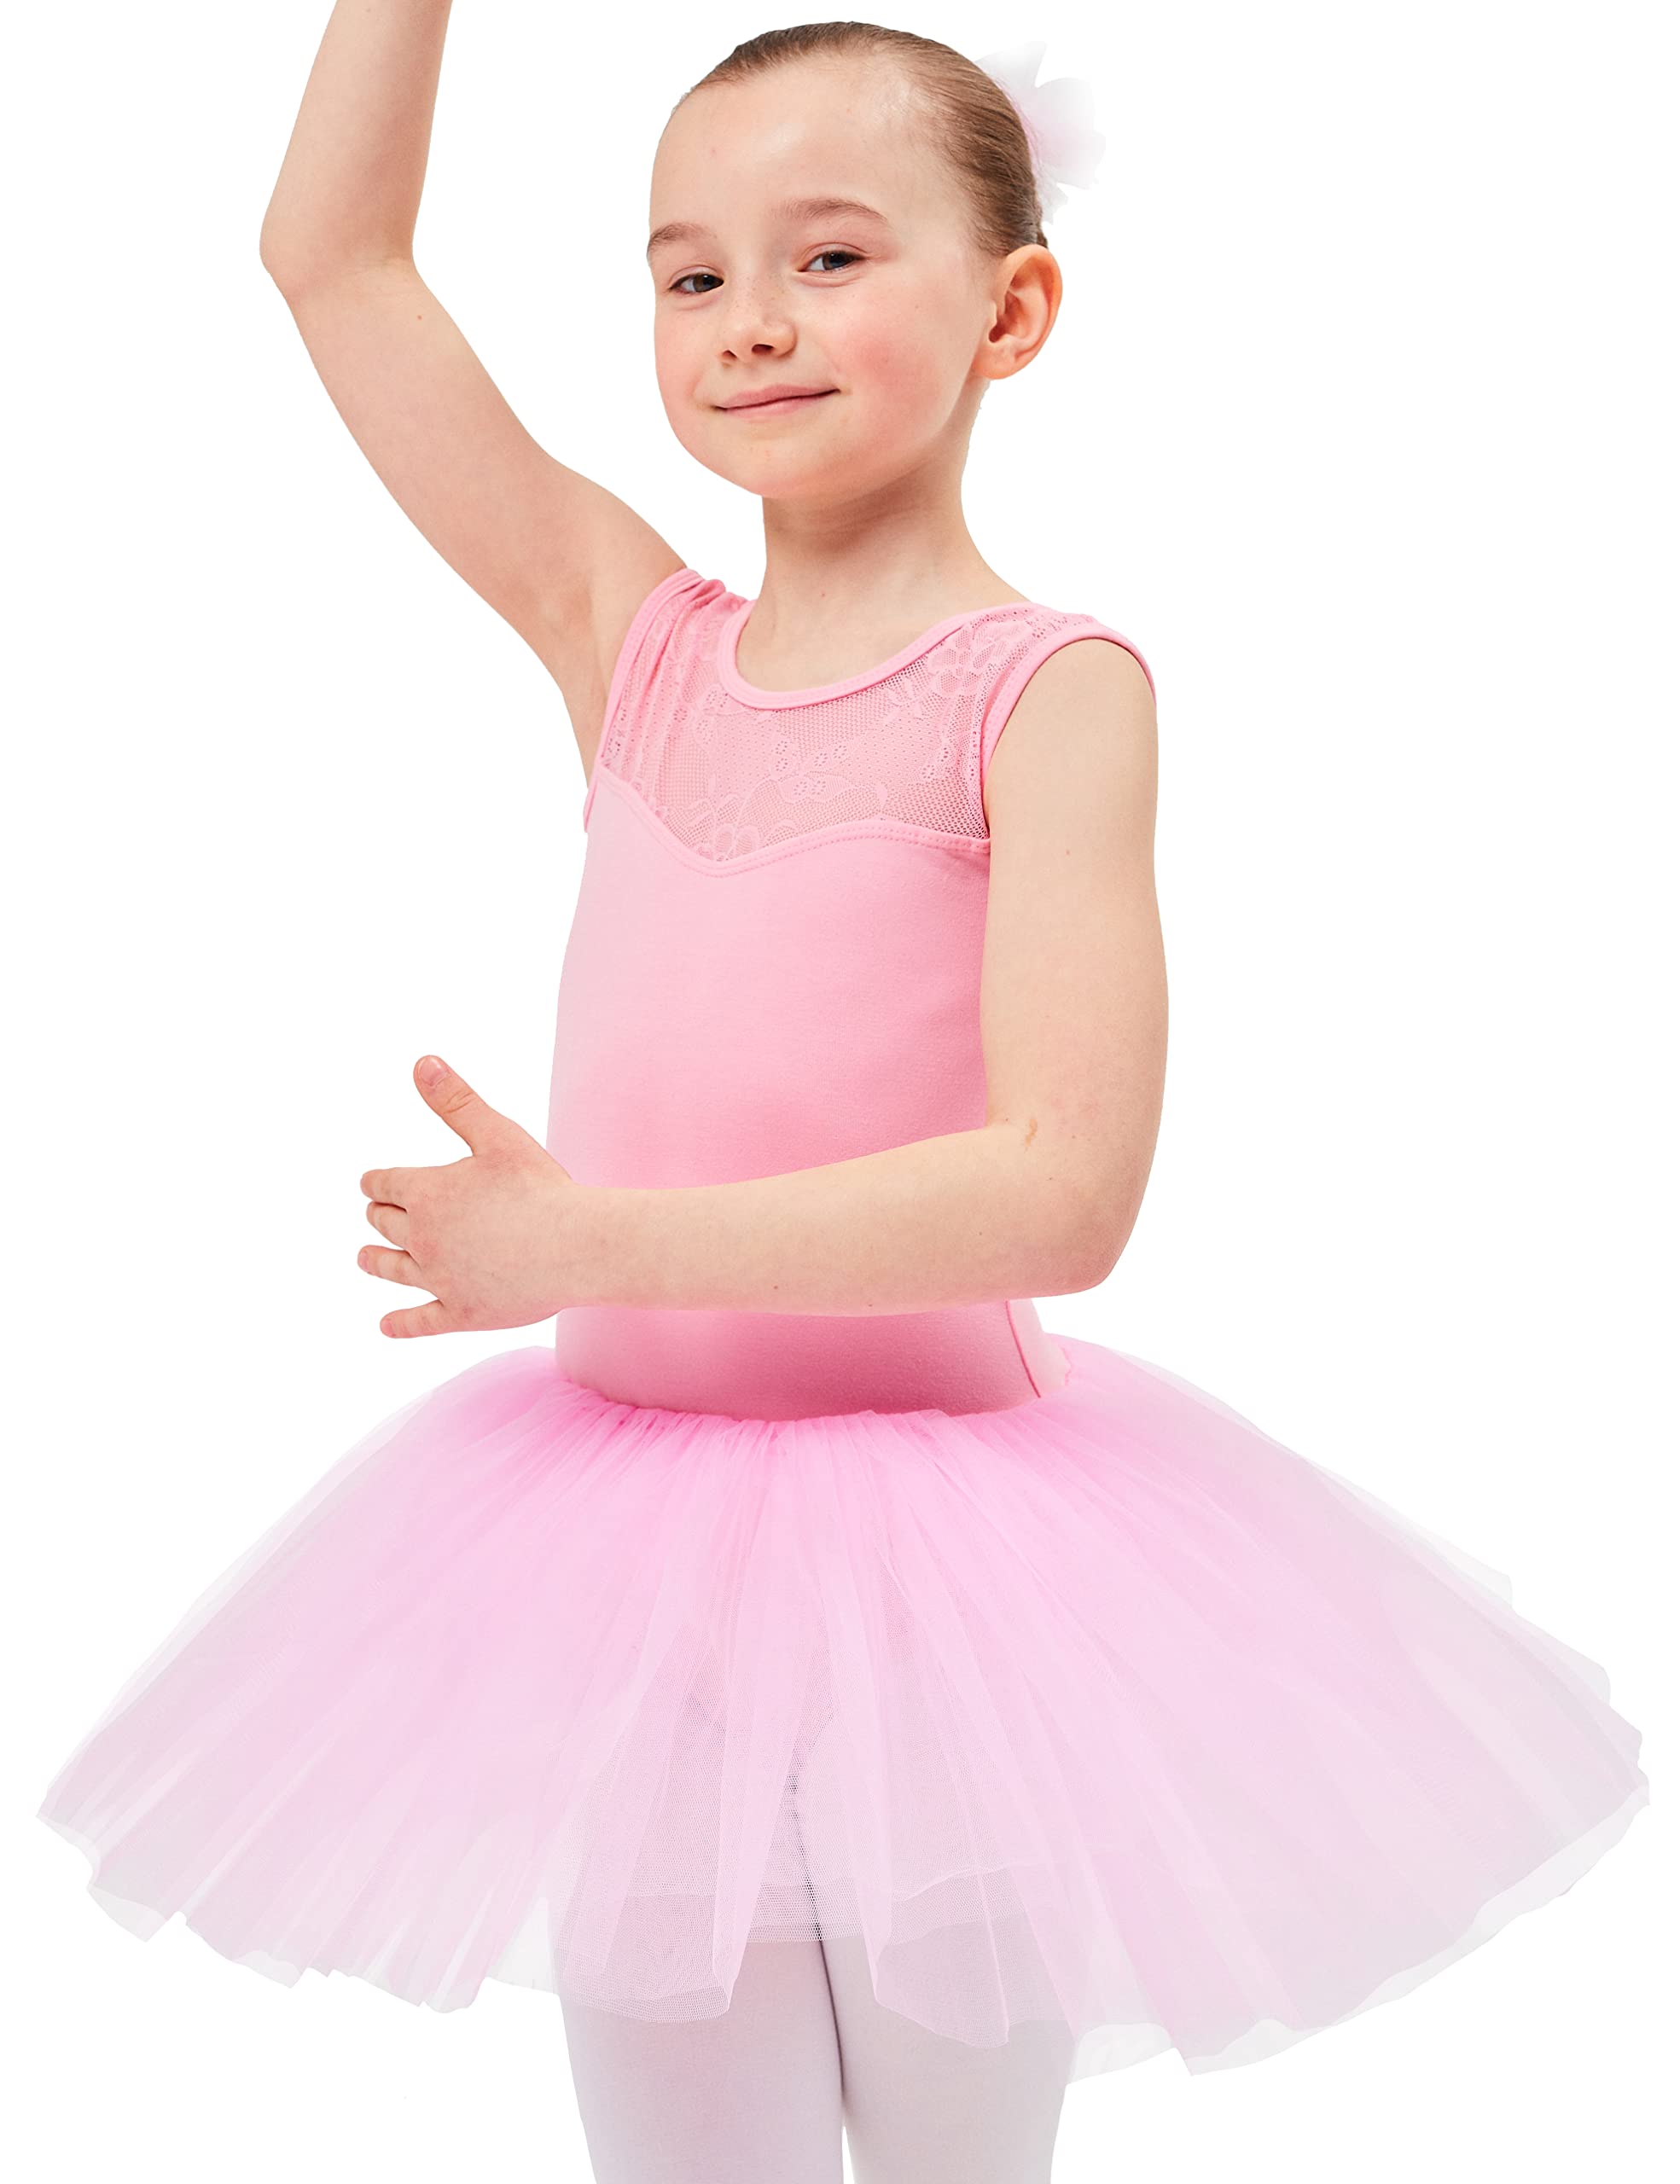 tanzmuster ® Ballettkleid Mädchen Tutu - Lottie - aus weichem Baumwollmaterial mit Spitzeneinsatz vorn und Tuturock Trikot fürs Kinder Ballett in rosa, Größe:164/170